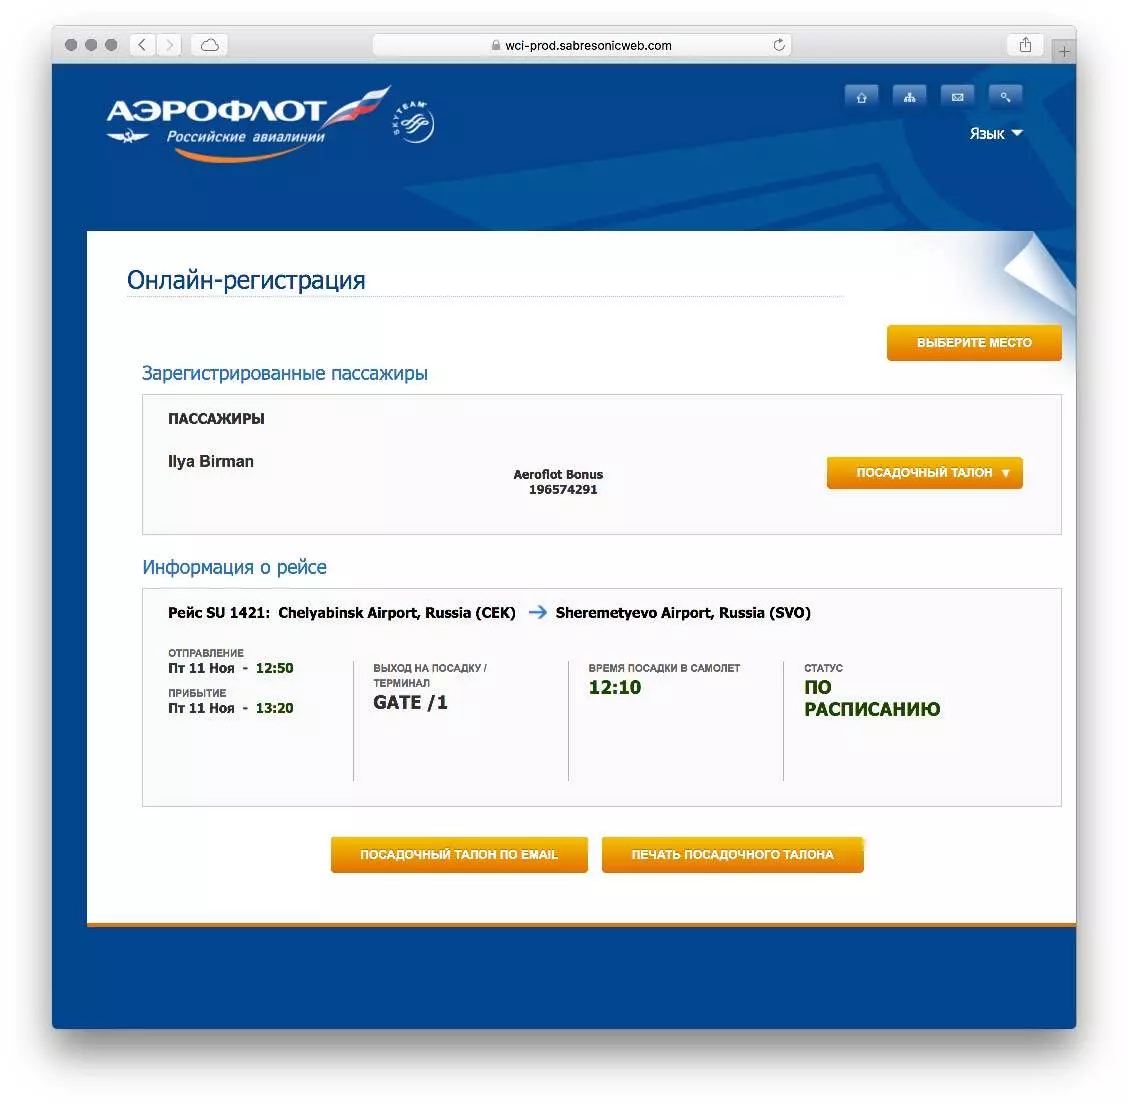 Уральские авиалинии (uralairlines): регистрация на рейс онлайн